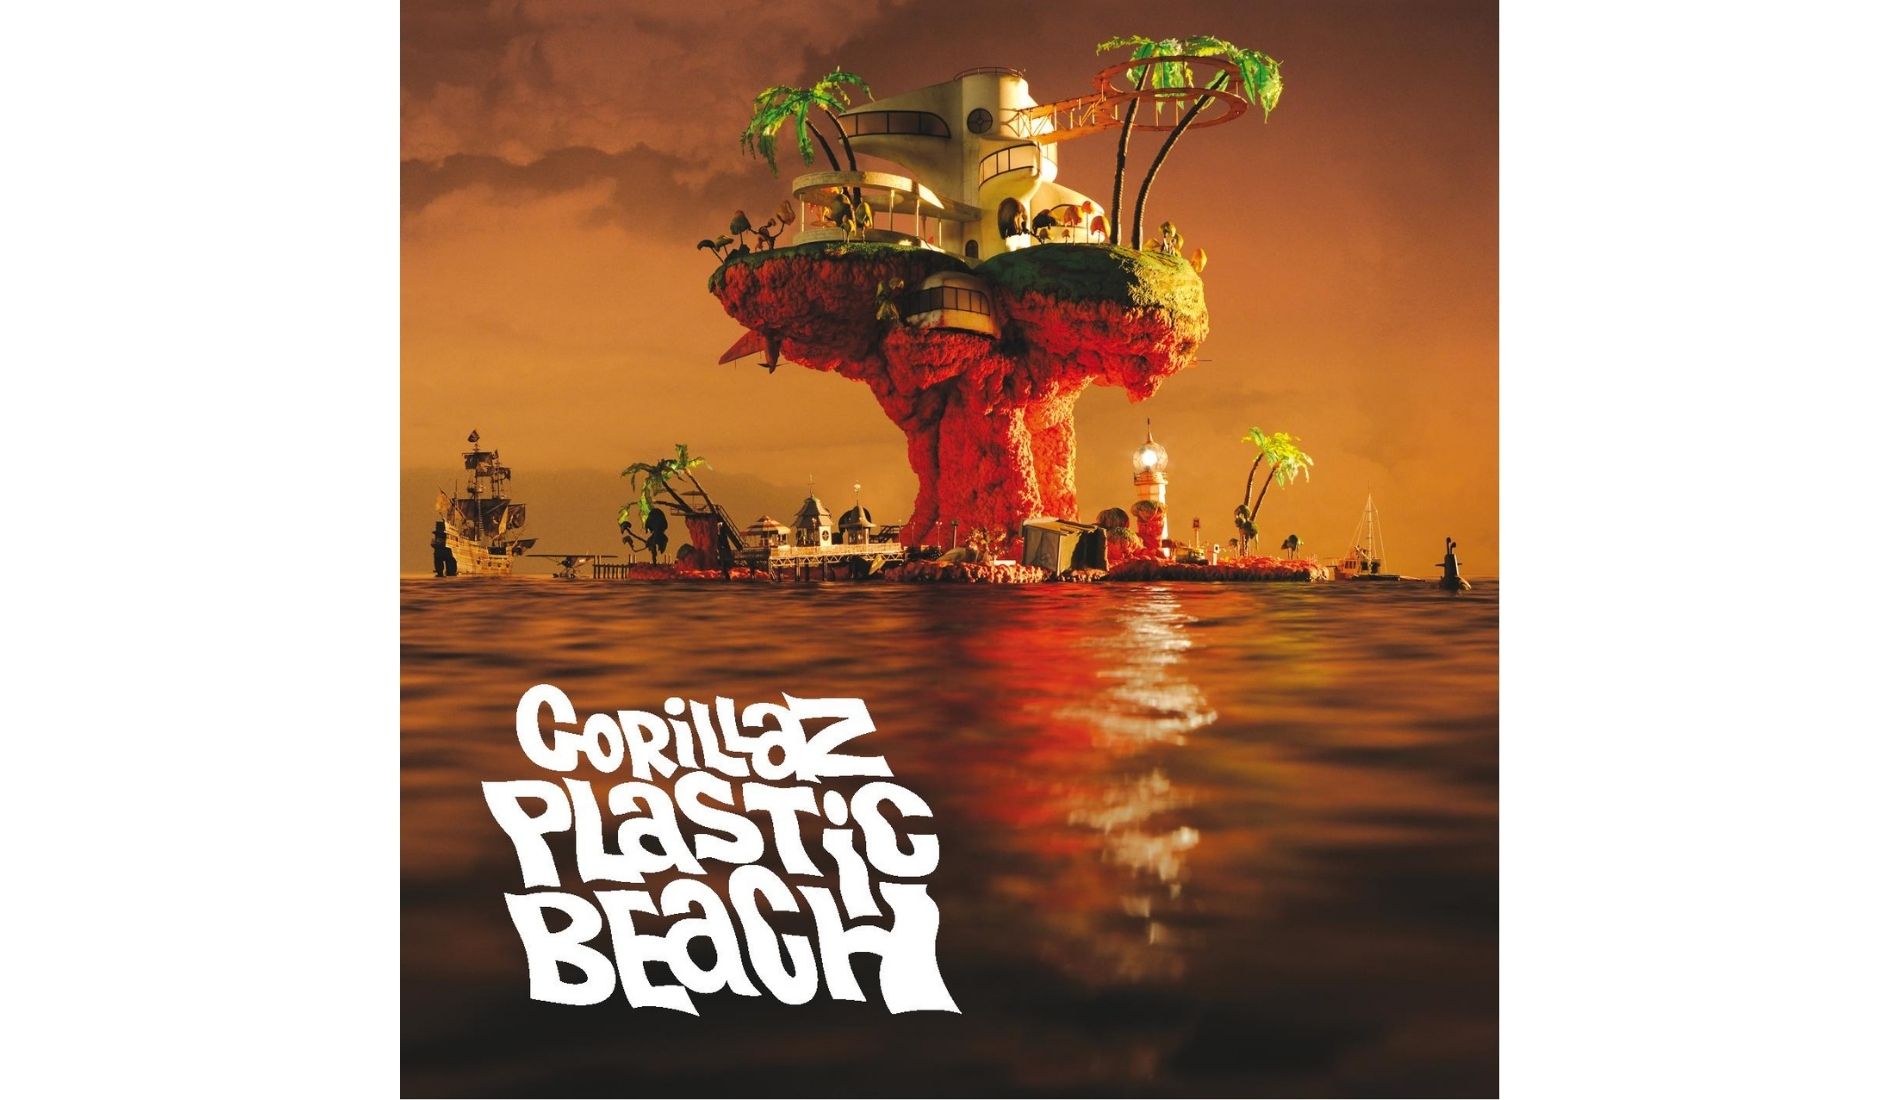 Album Gorillaz Plastic Beach Illustration Bisnis Muda - Image: Pinterest